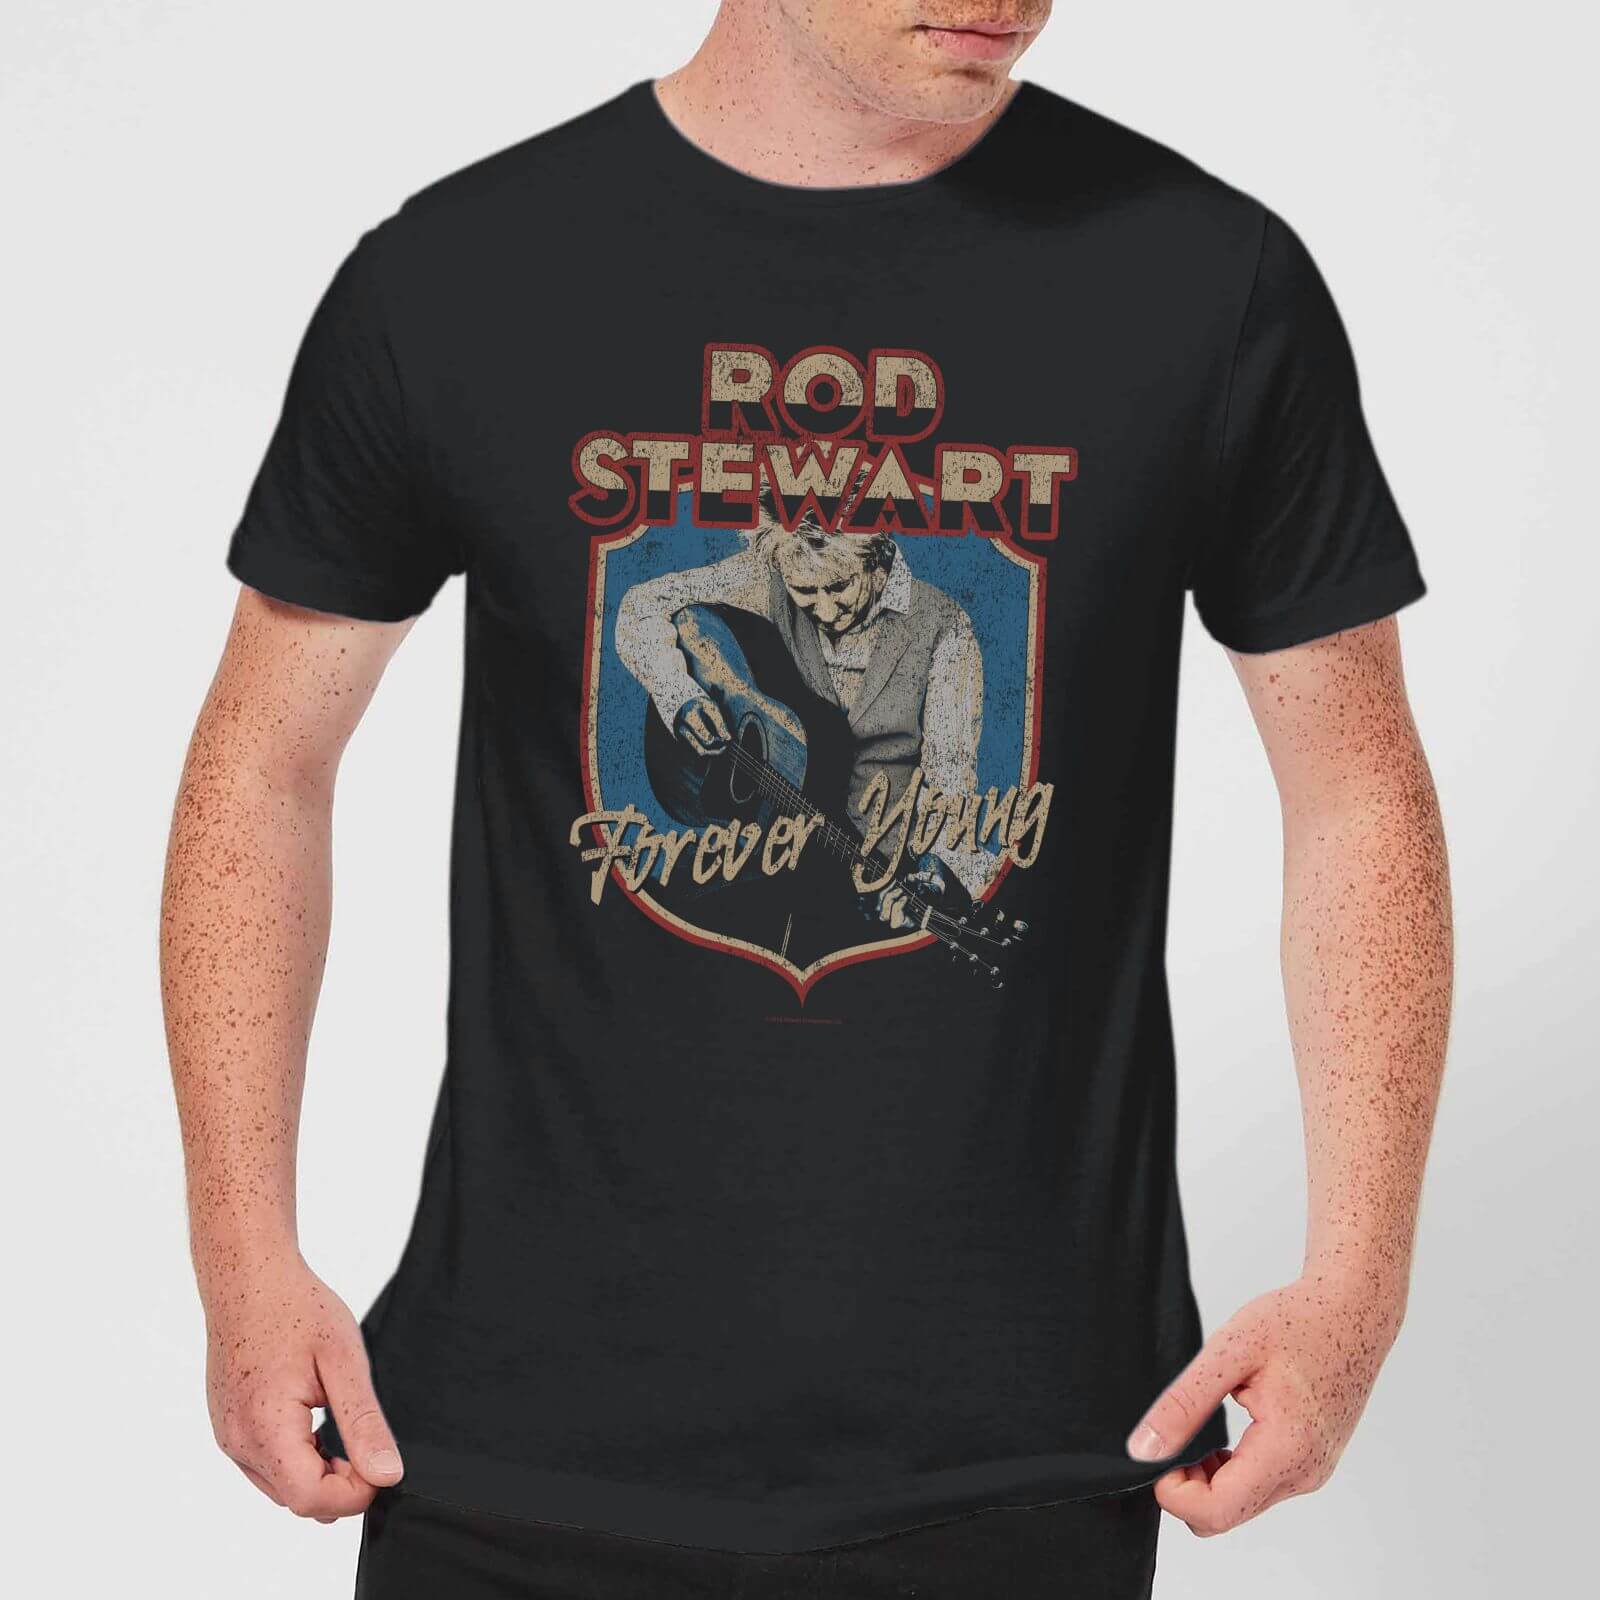 rod stewart rangers shirt